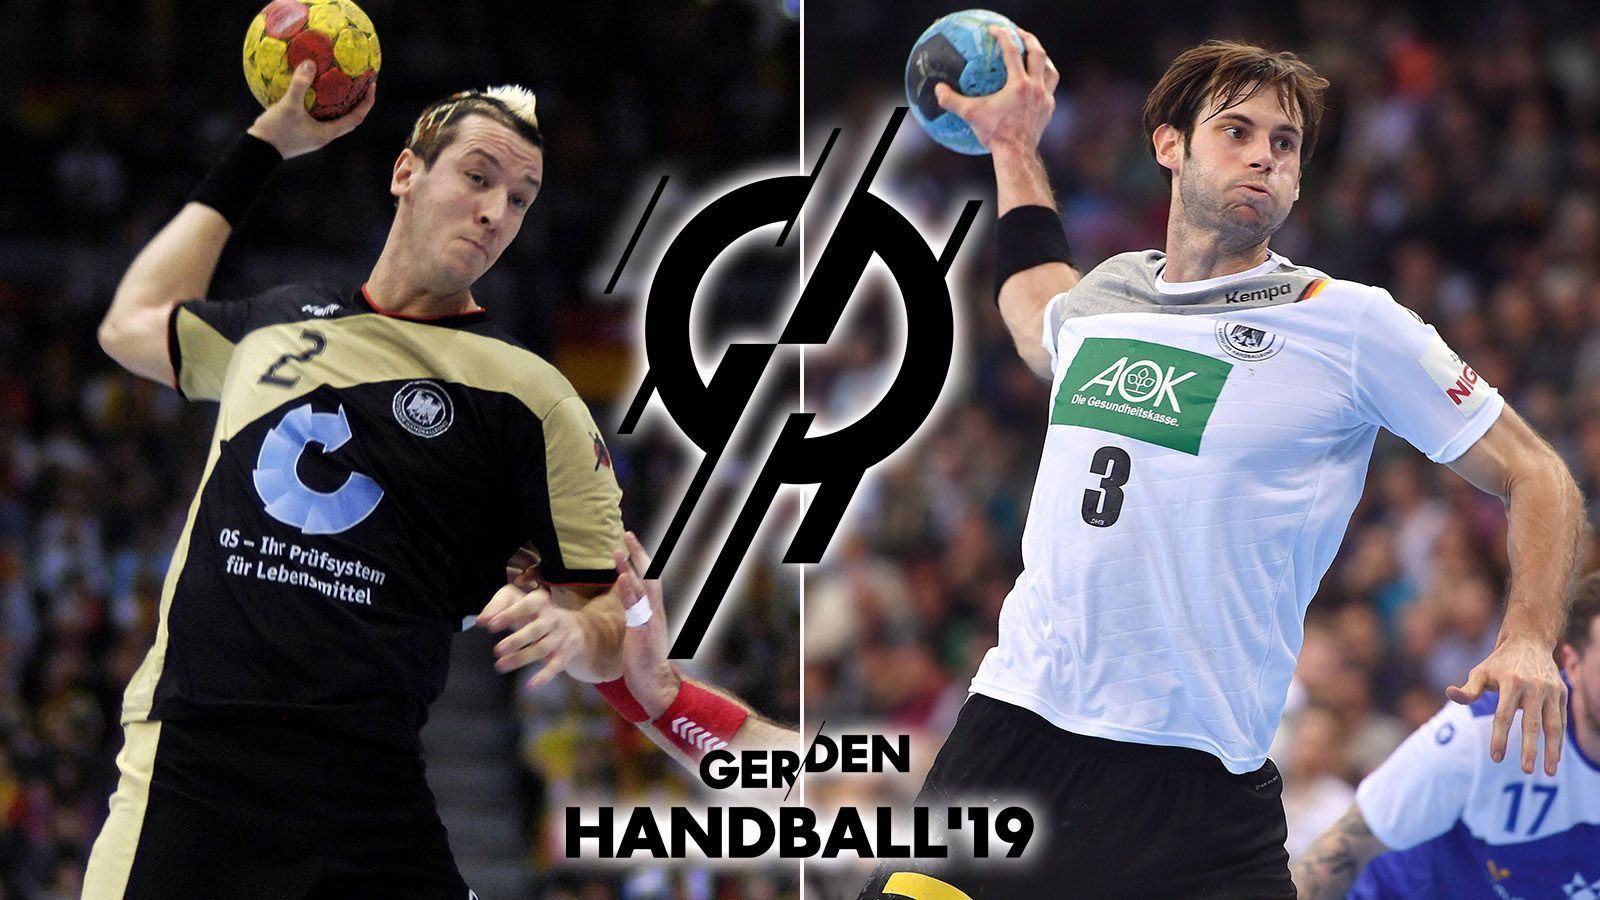 Handball-Heim-WM Die Kader von 2007 und 2019 im Vergleich